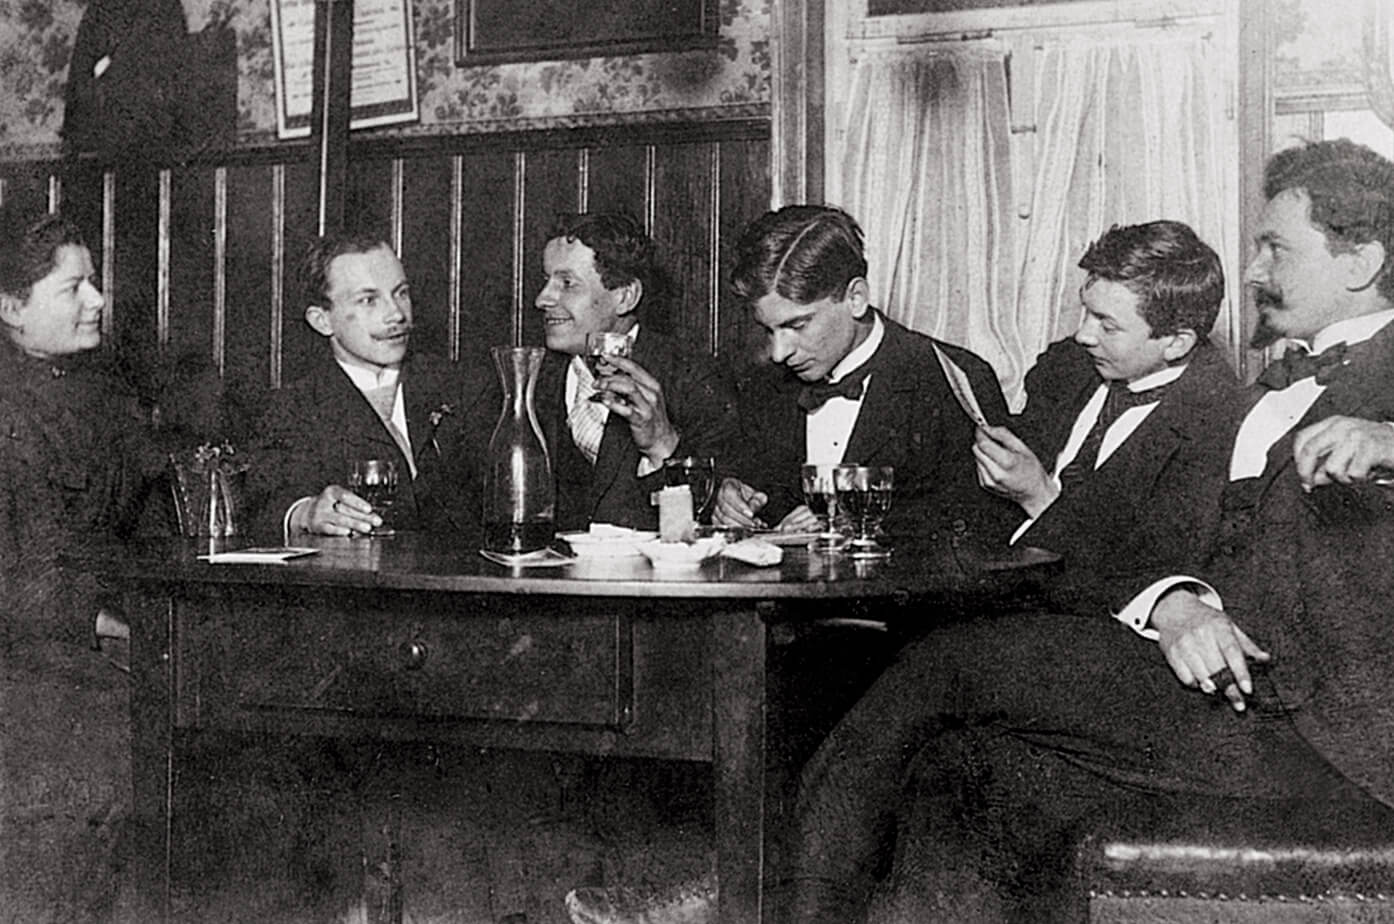 機械工学科の学生 カール・ケスラー（Karl Kessler）（ 右から2番目）とKarlMaybach Gasthaus（右から 3 番目）の宿舎で